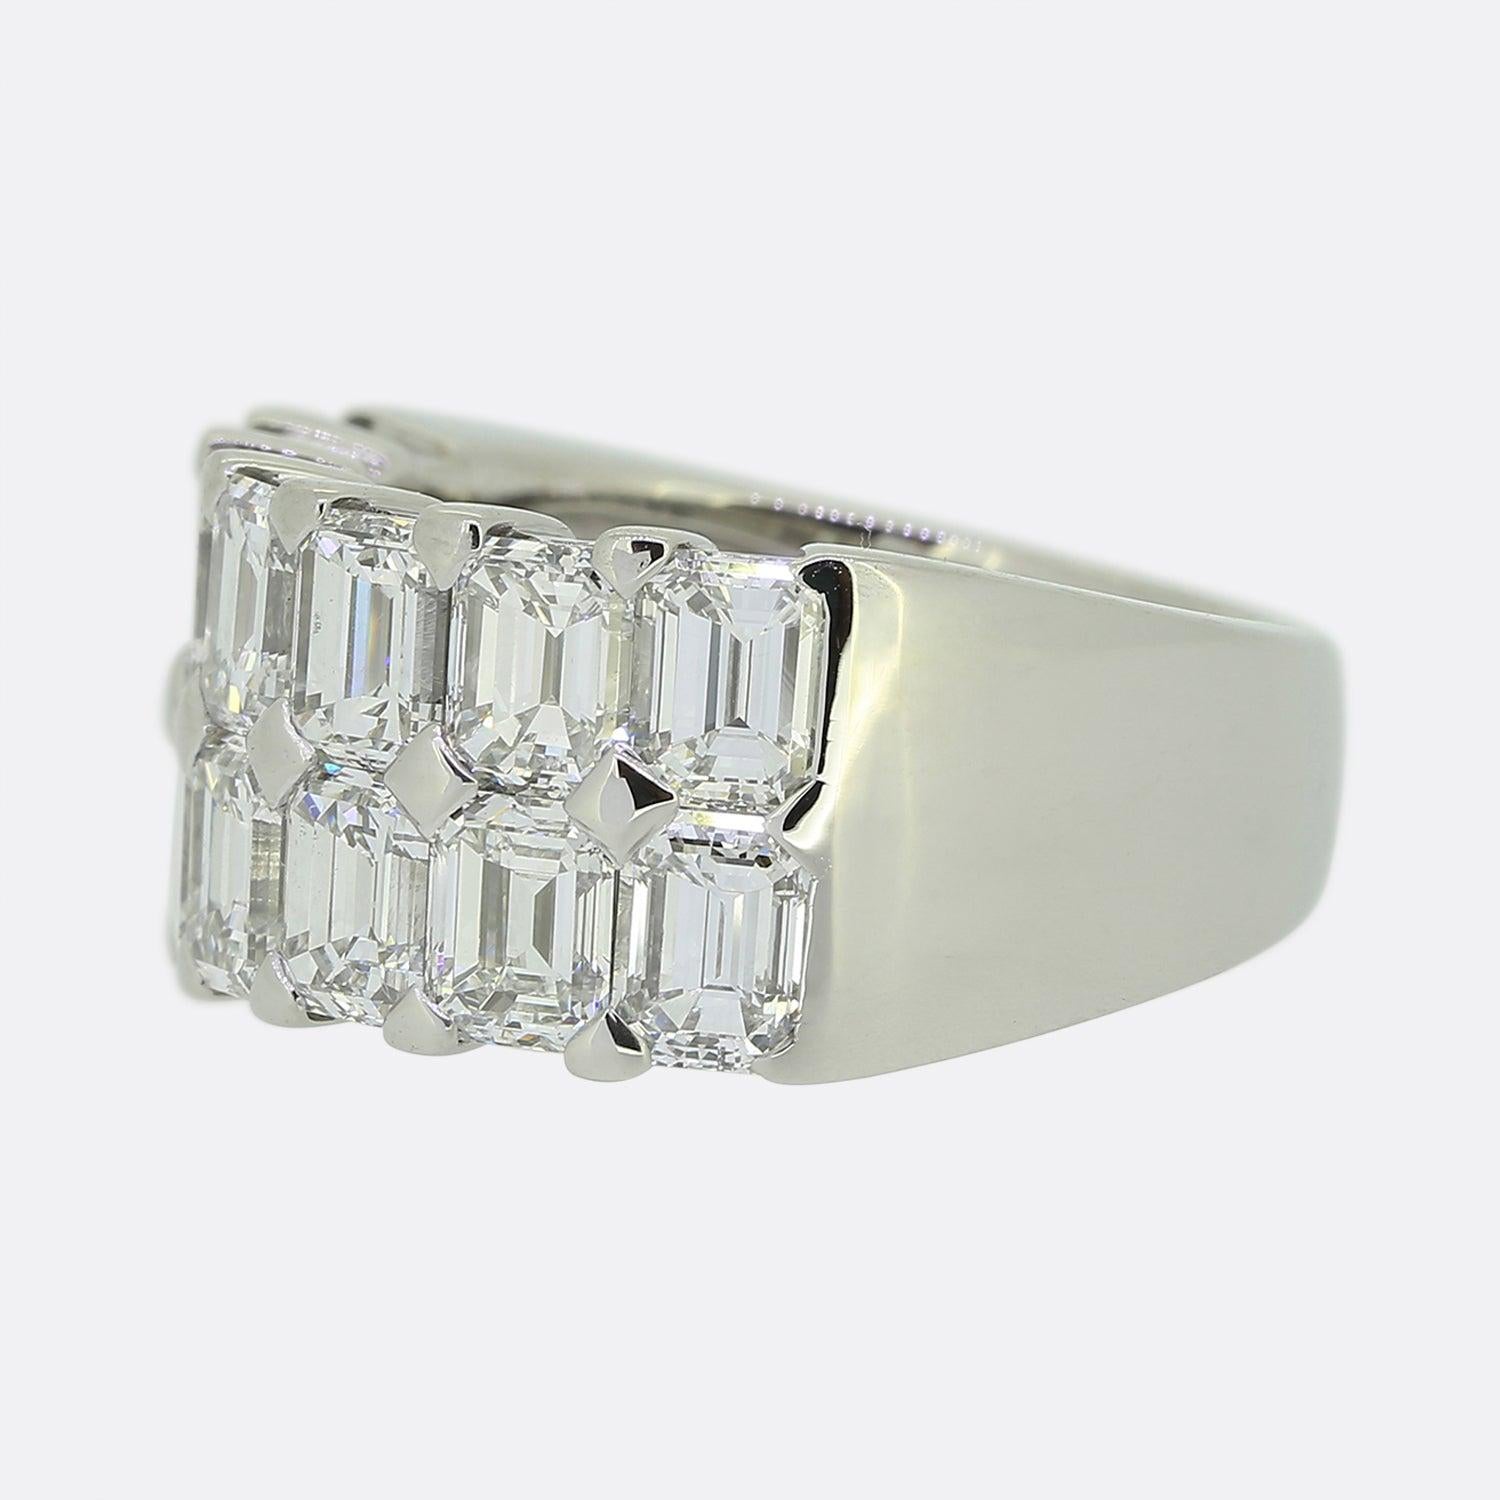 Nous vous présentons ici une bague vraiment magnifique du créateur de bijoux de luxe Boodles. La bague présente un impressionnant ensemble de 5,19 carats de diamants de taille émeraude parfaitement assortis. Les diamants sont répartis sur deux rangs